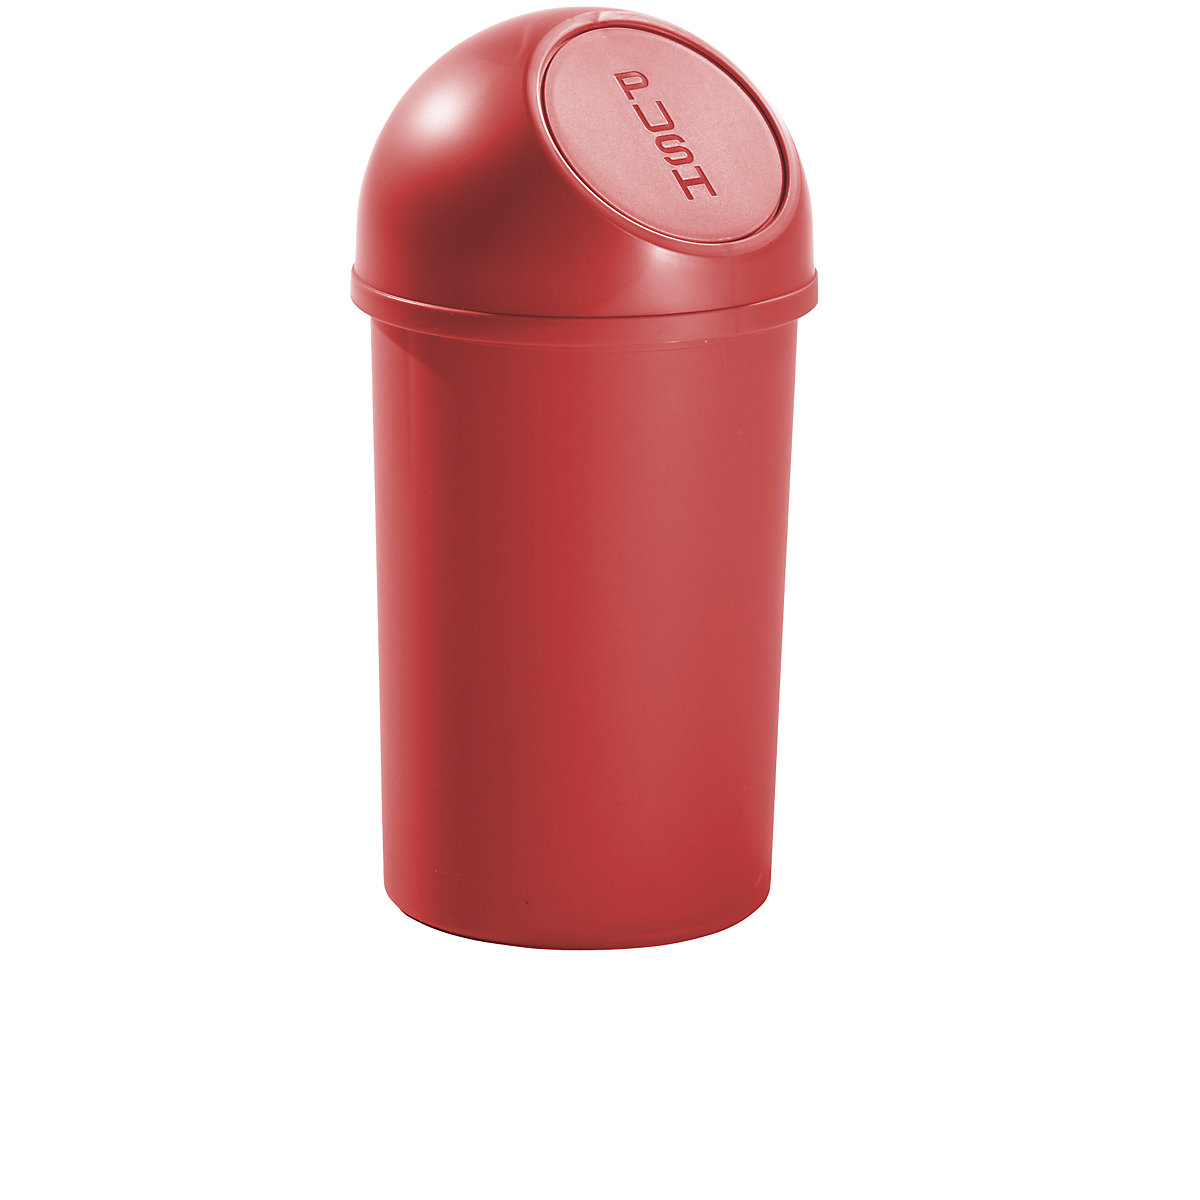 Plastični spremnik za otpad s otvaranjem na pritisak – helit, volumen 13 l, VxØ 490 x 252 mm, u crvenoj boji, pak. 6 kom.-4